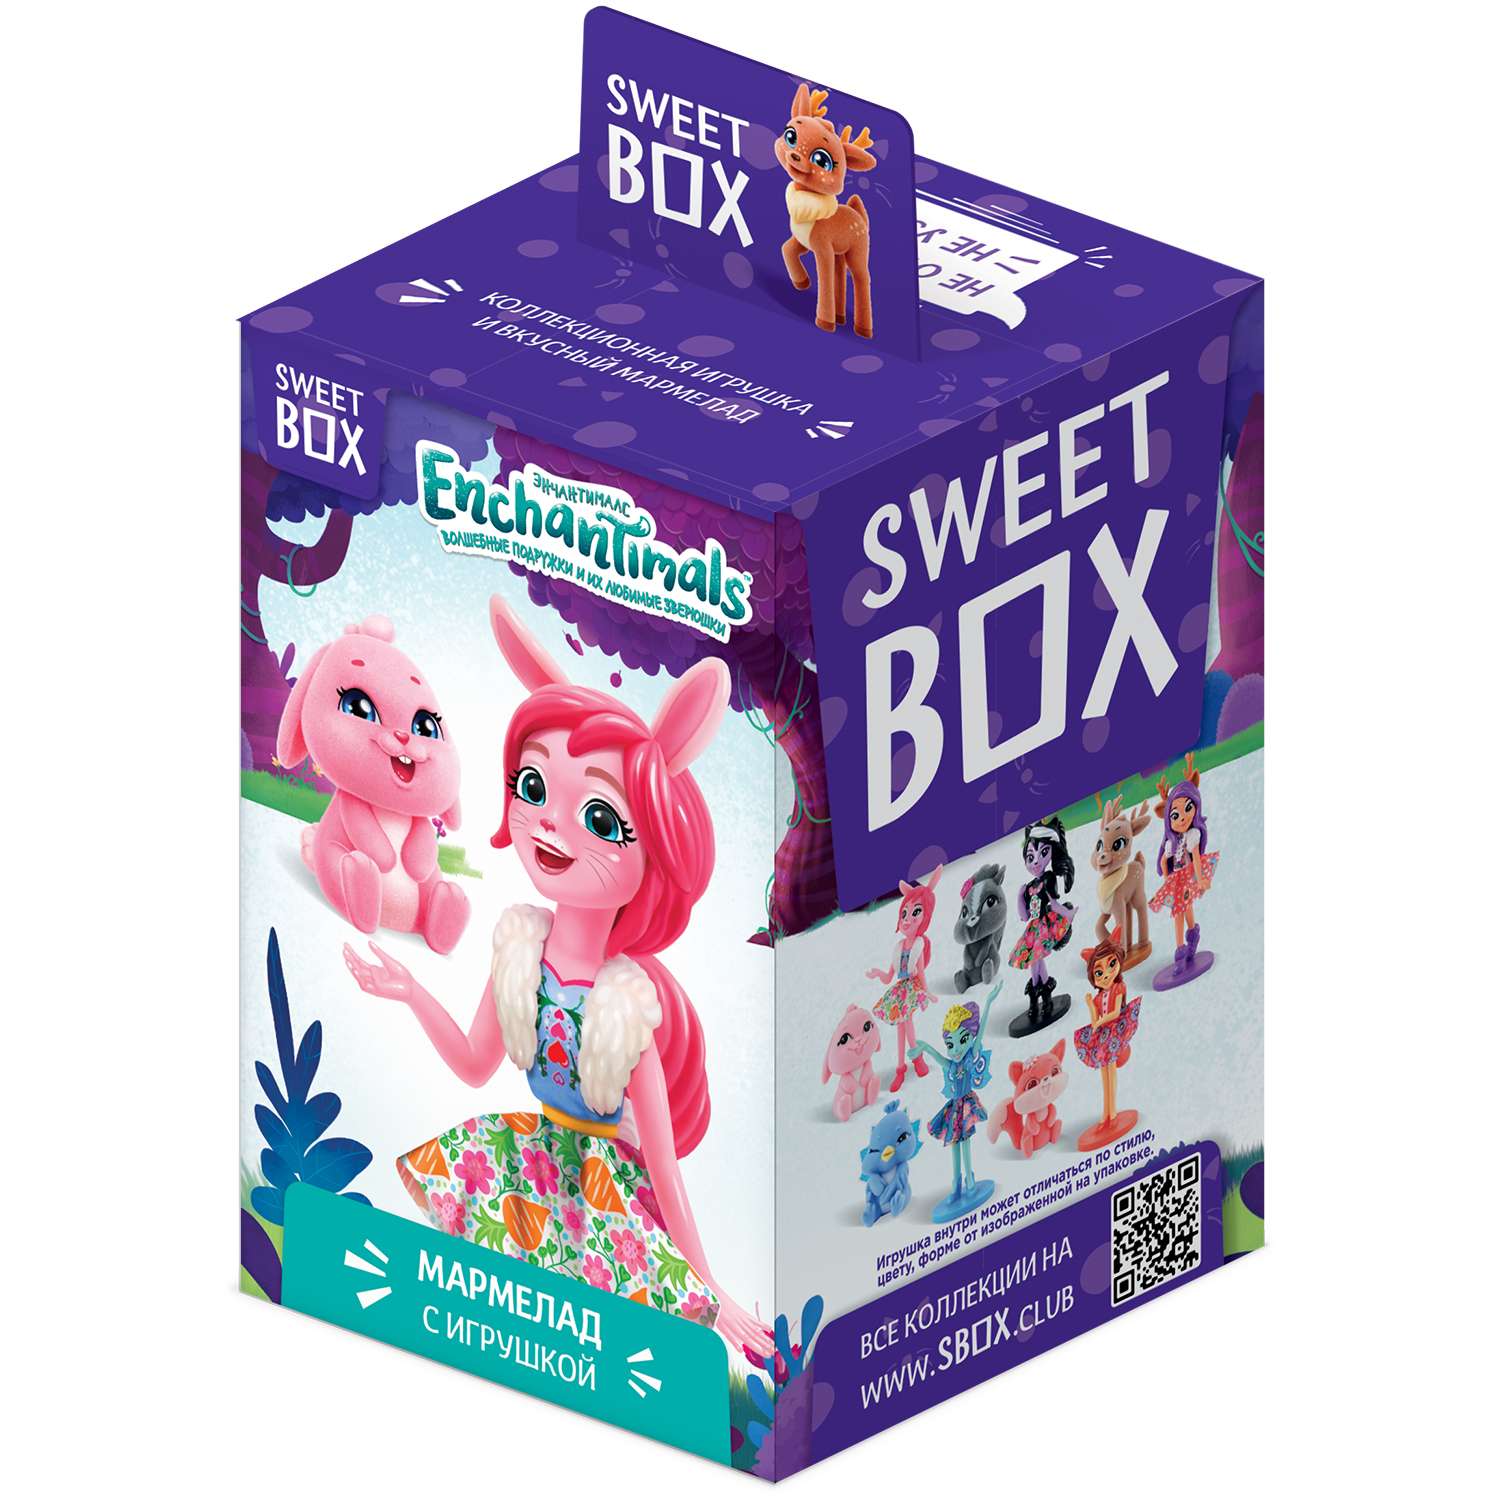 Мармелад Sweet box Enchantimals с игрушкой 10г в непрозрачной упаковке (Сюрприз) - фото 1